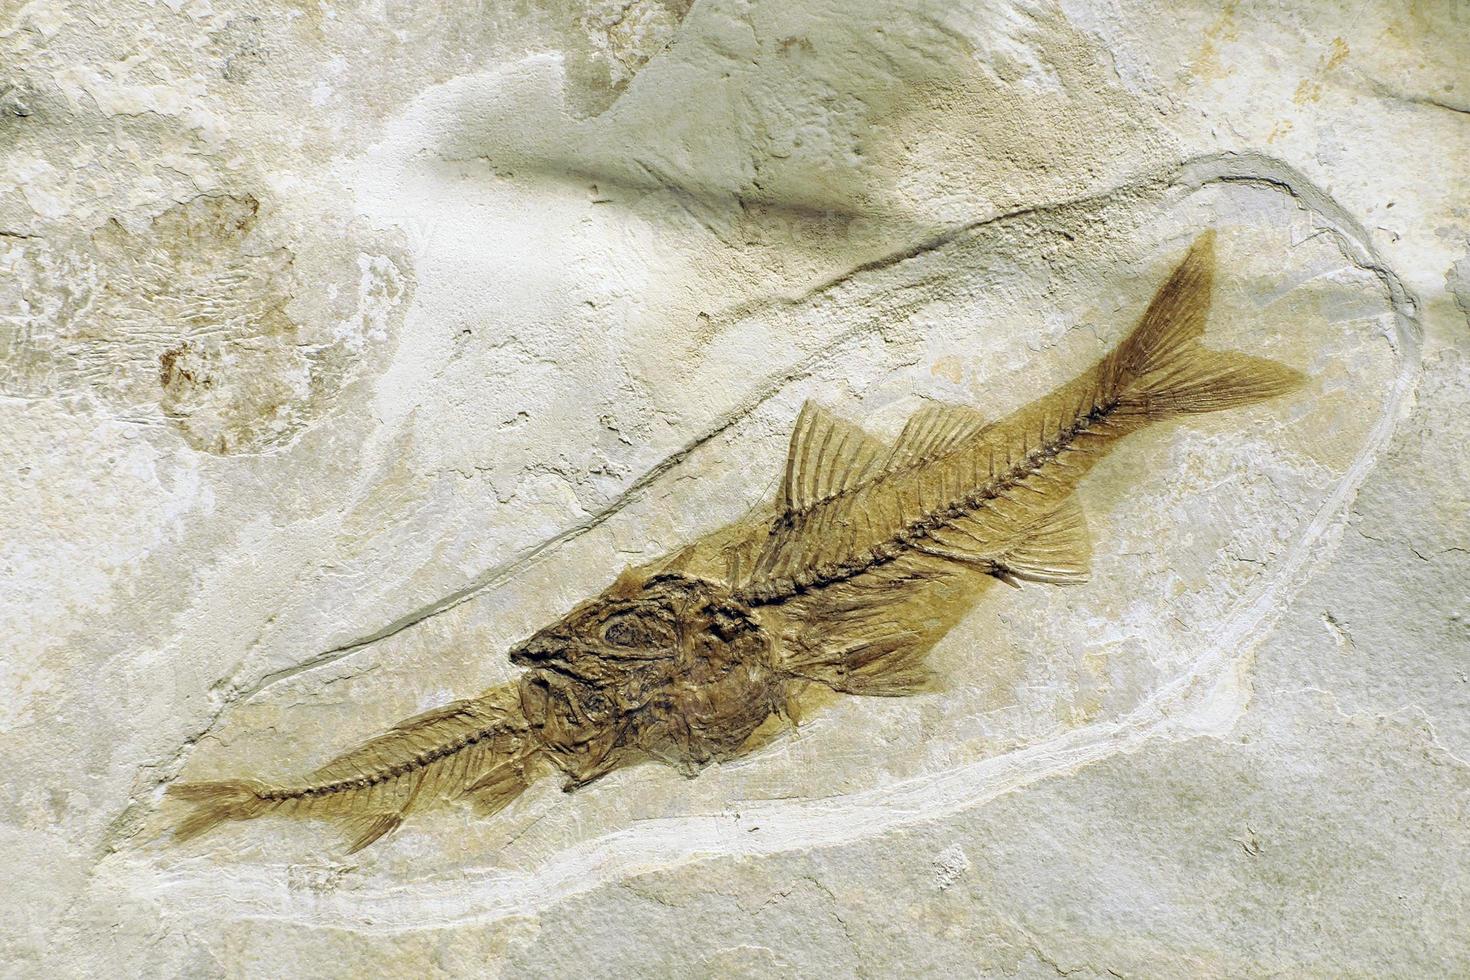 depalis macrurus peces fosilizados prehistóricos comiendo otros peces en piedra foto